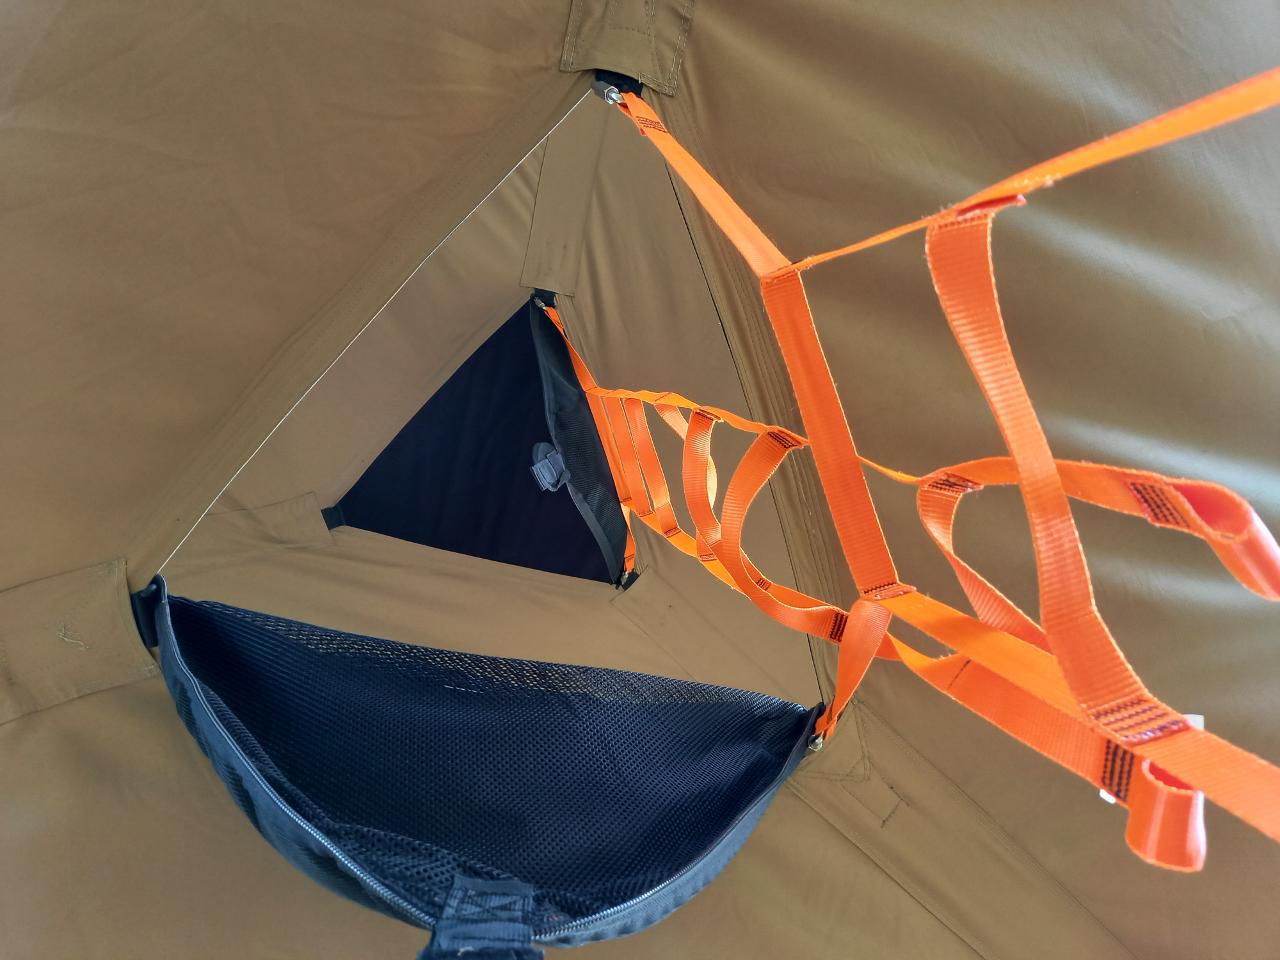 Logement GreenGo: Bus soleil avec une tente dans les arbres et une tente cocoon - Image 6